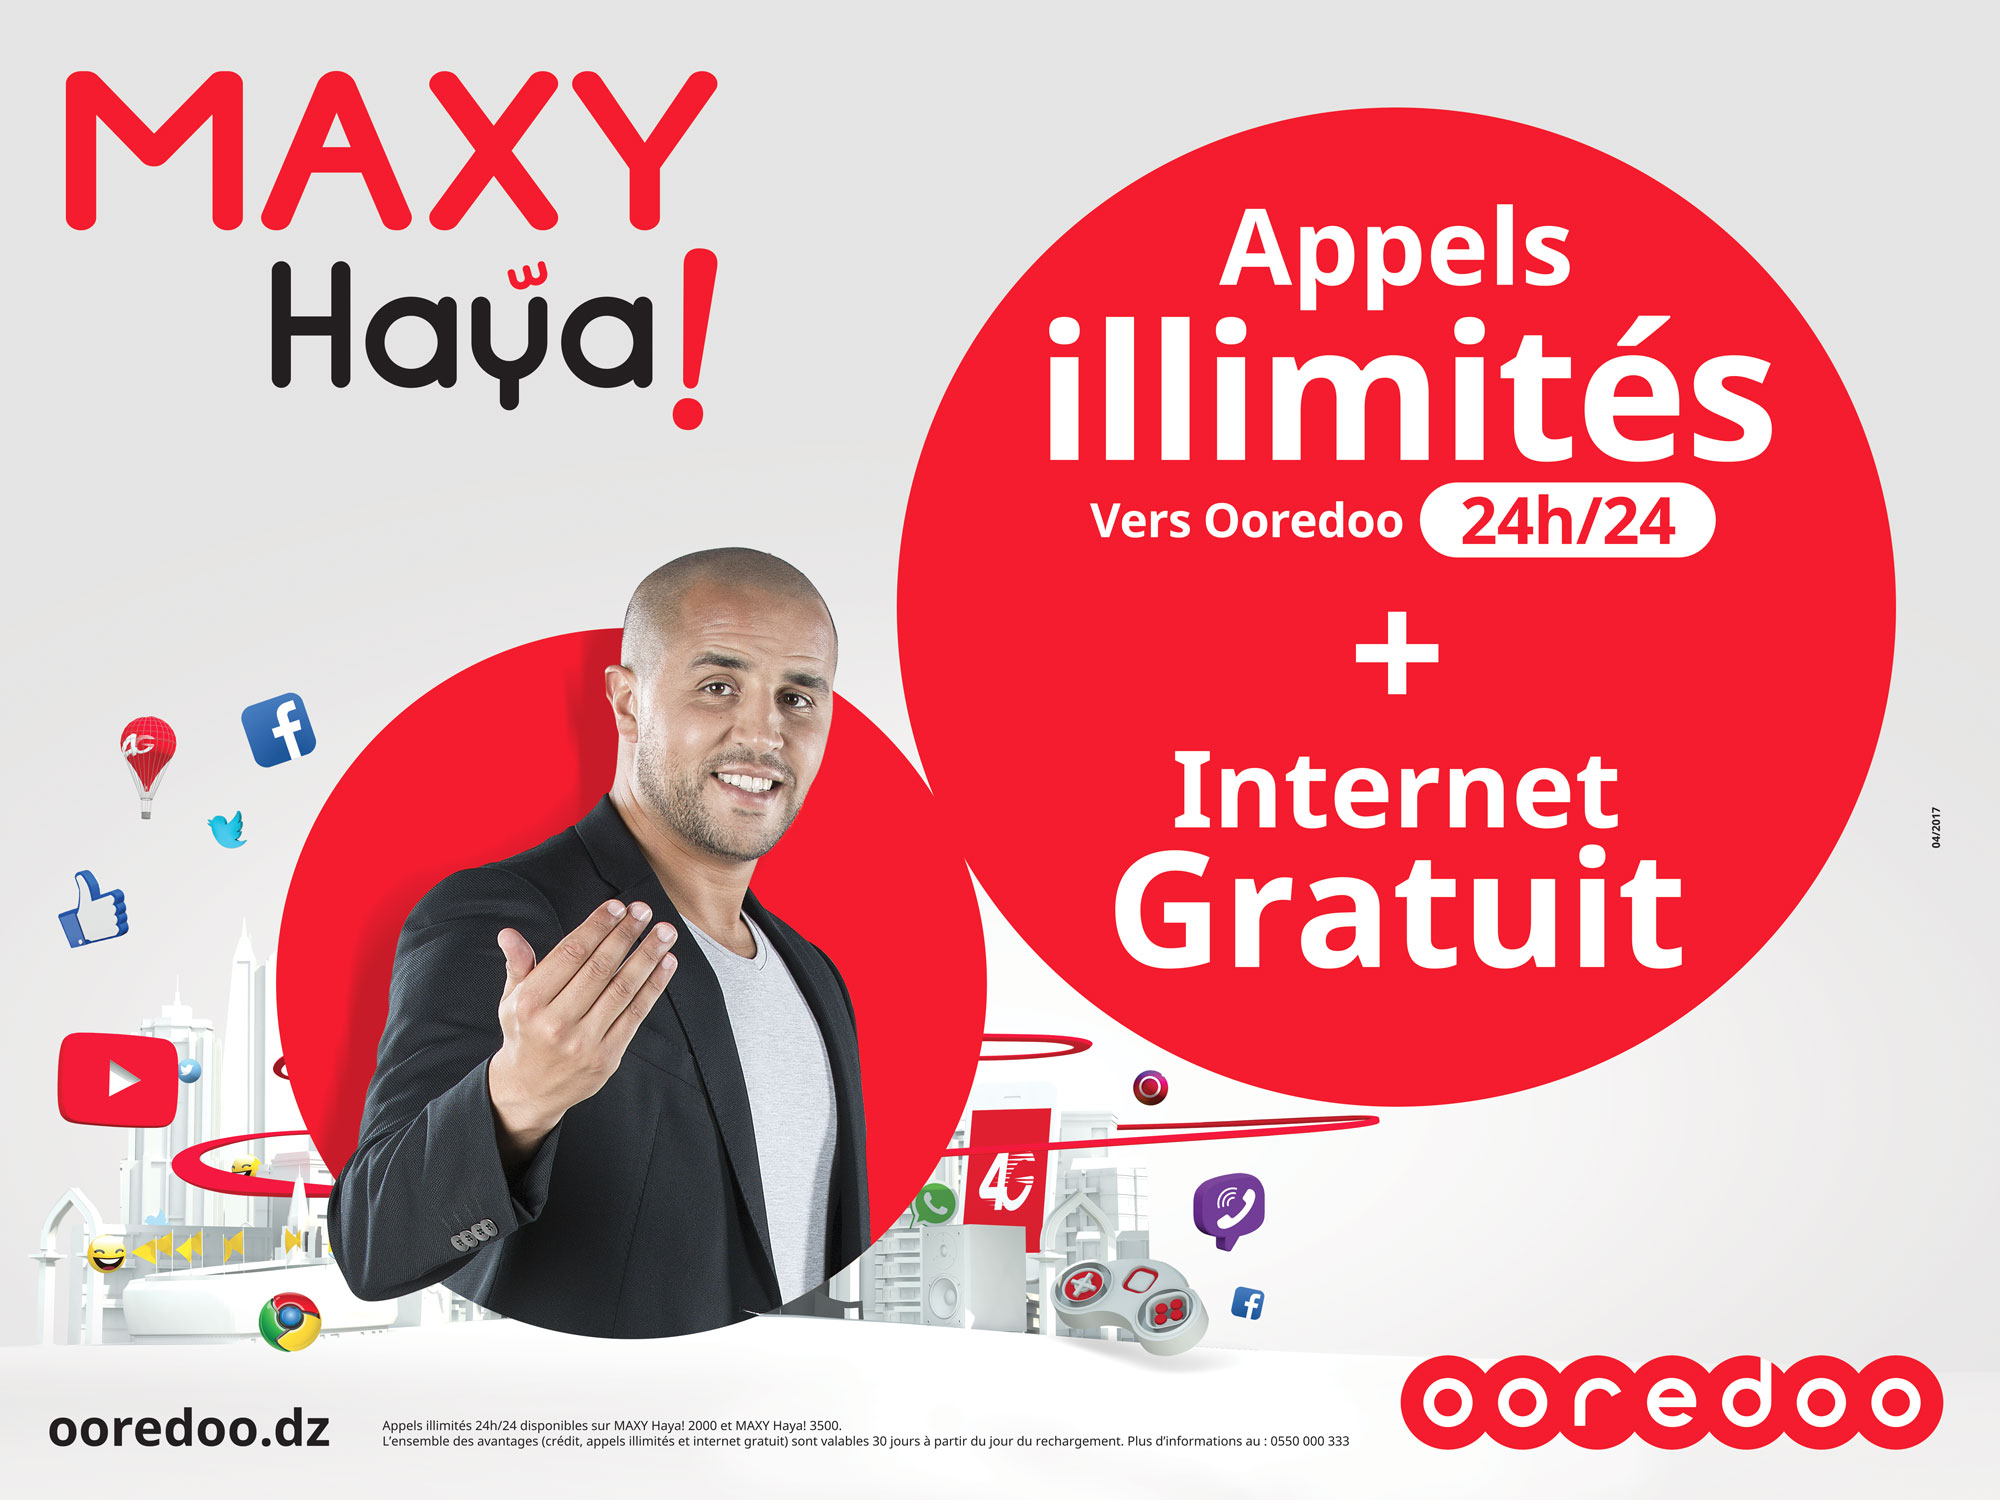 Nouvelles recharges Maxy Haya ! d’Ooredoo : profitez d’appels illimités et de l’internet gratuit